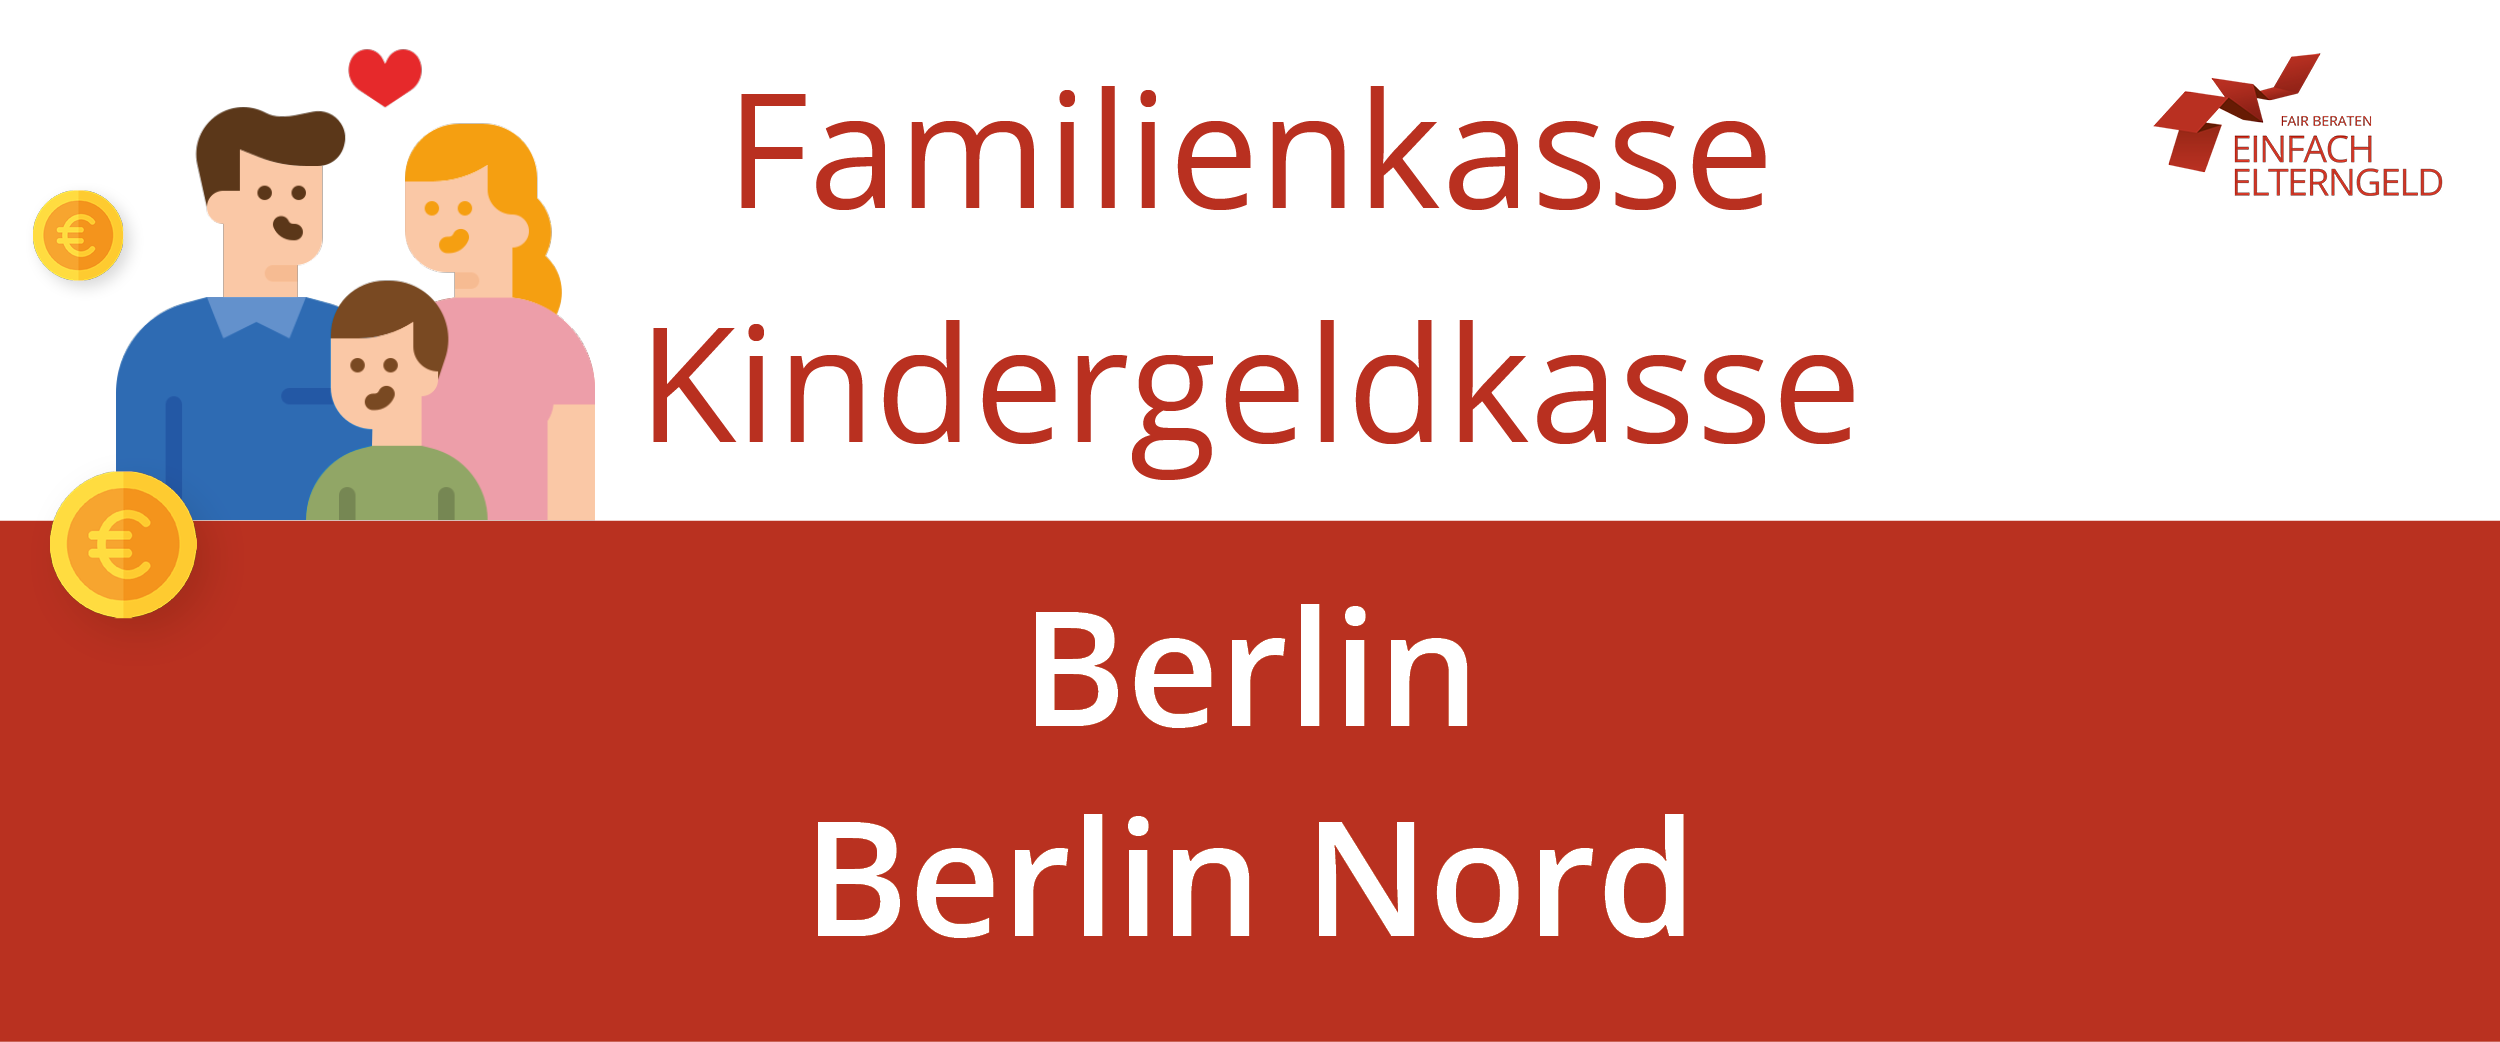 Wir stellen die Familienkasse Kindergeldkasse Berlin Nord vor.